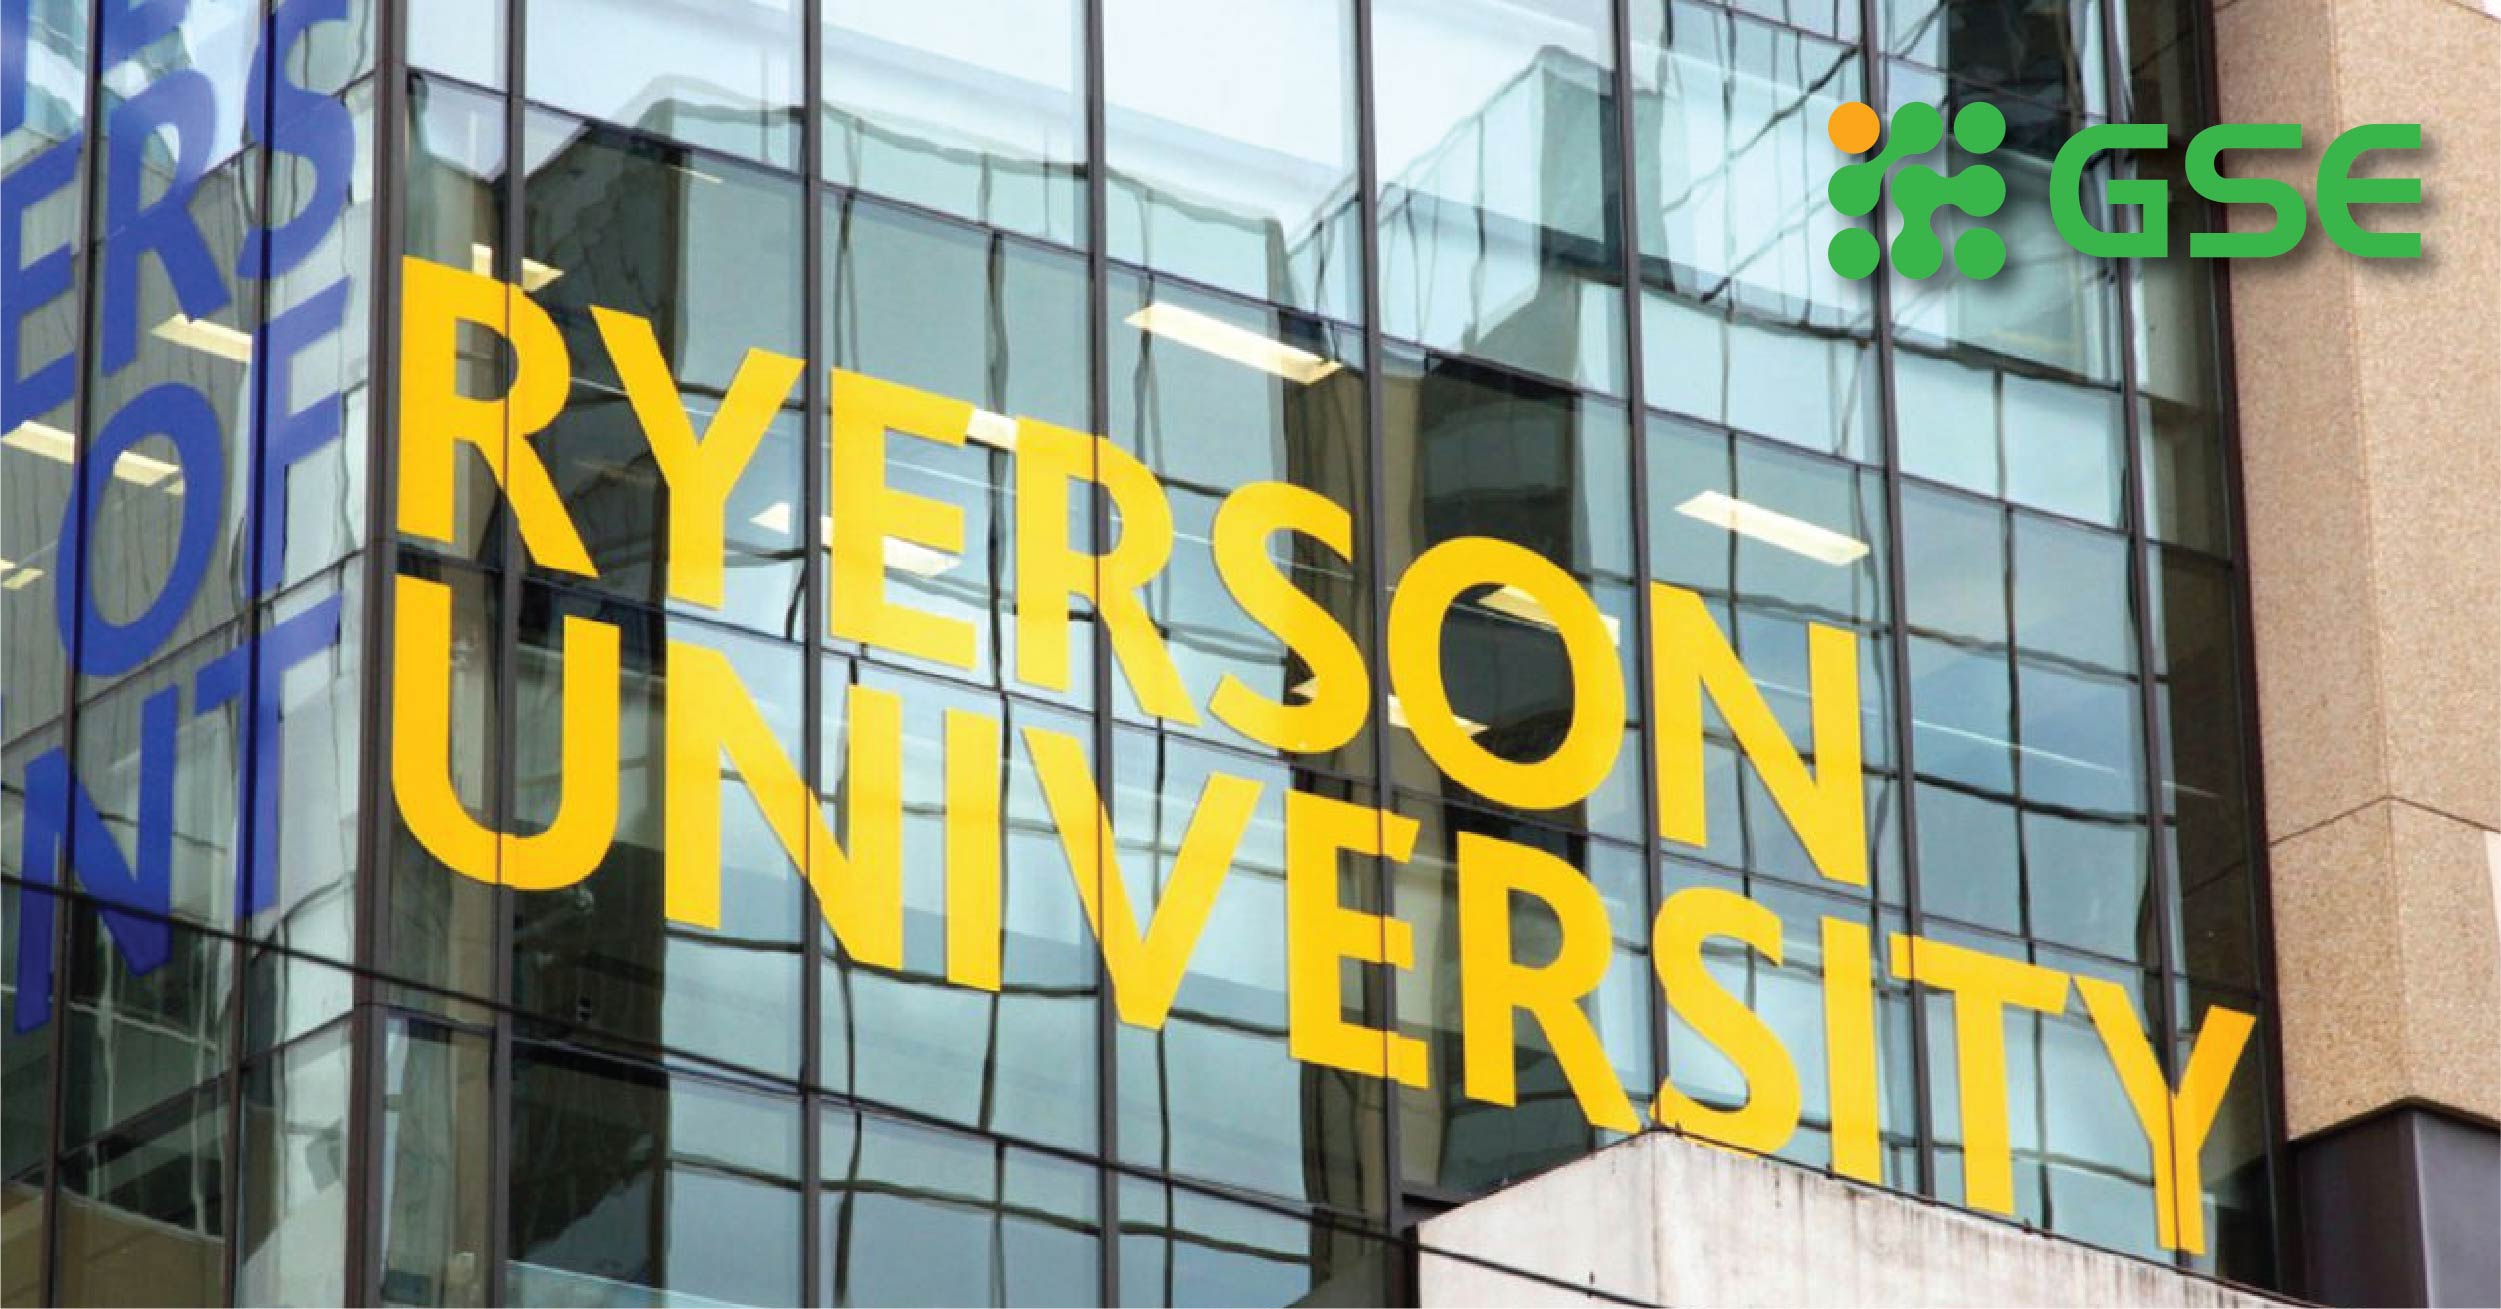 Trải nghiệm hoàn toàn khác biệt khi học tập tại Ryerson University – Canada